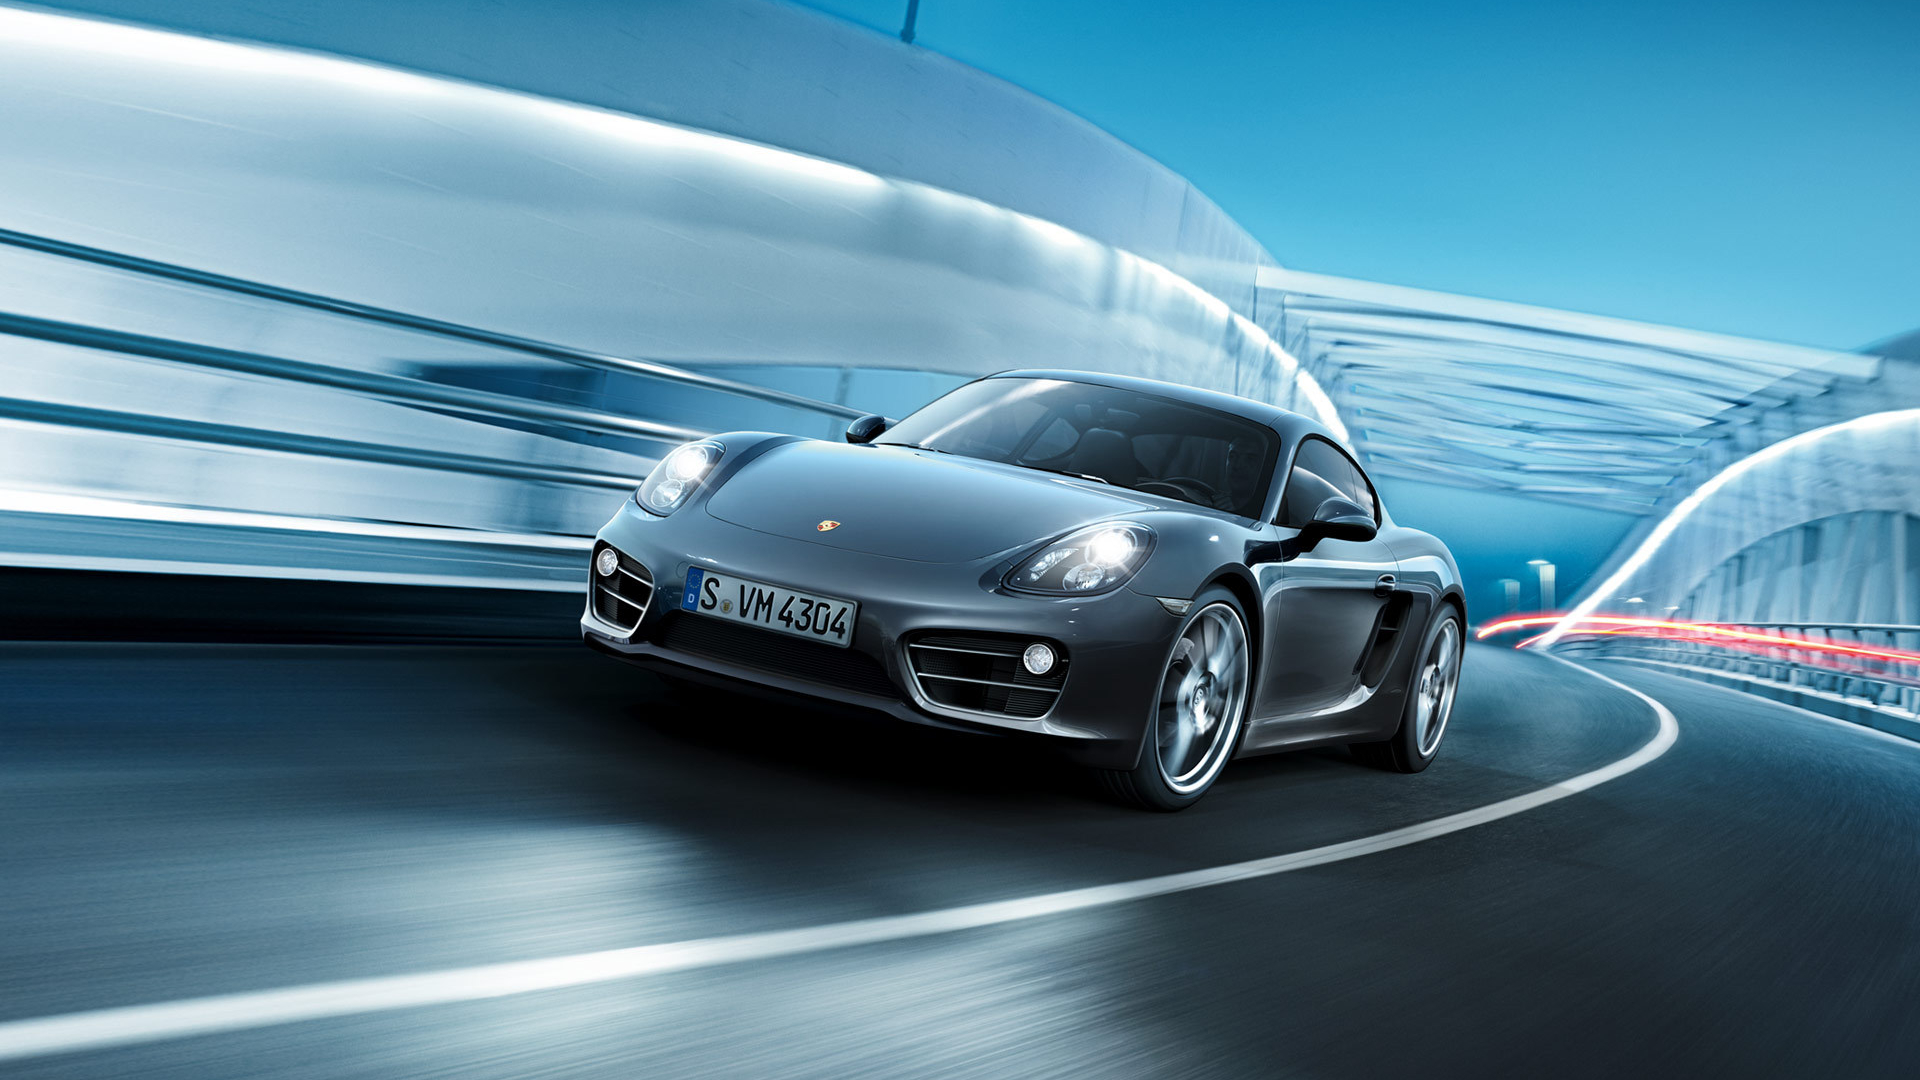 Descarga gratuita de fondo de pantalla para móvil de Porsche Caimán, Porsche, Coche De Plata, Vehículos, Coche.